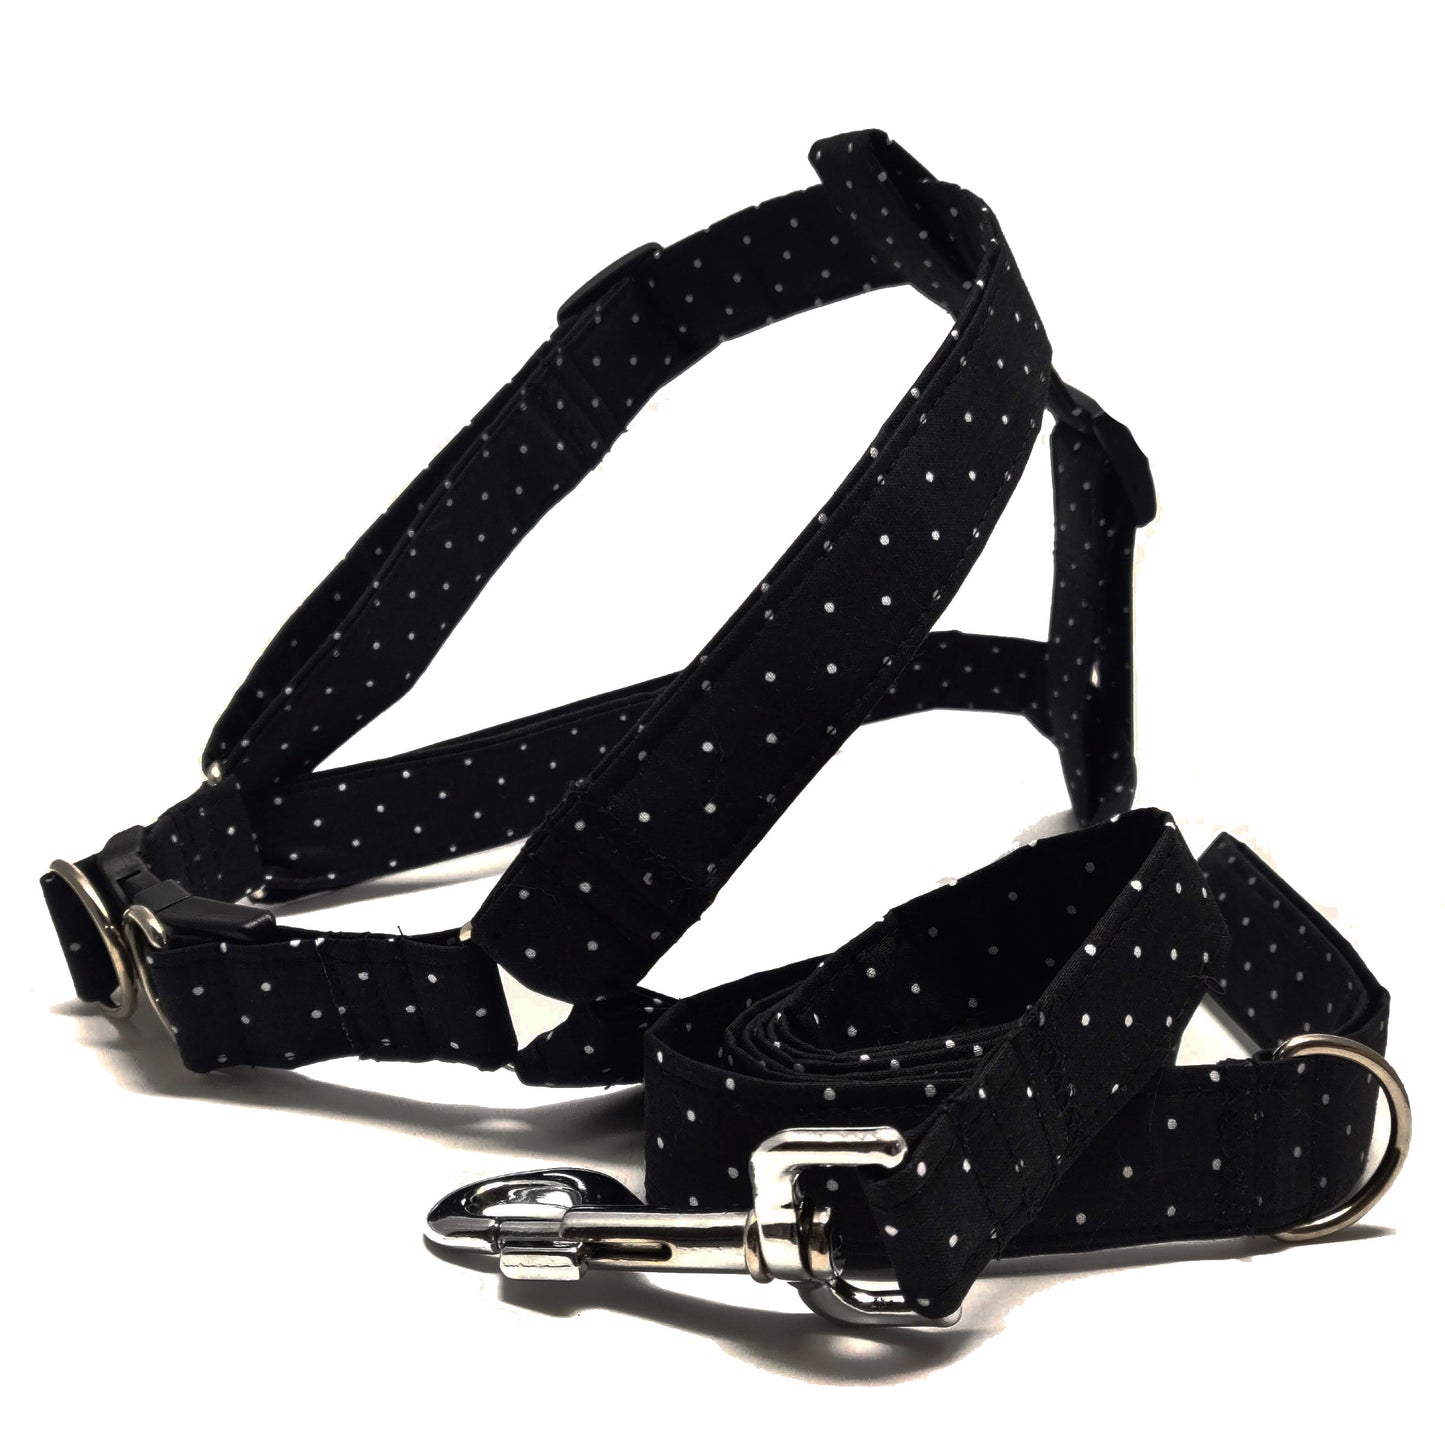 MIni Dots on Black Dog Harness